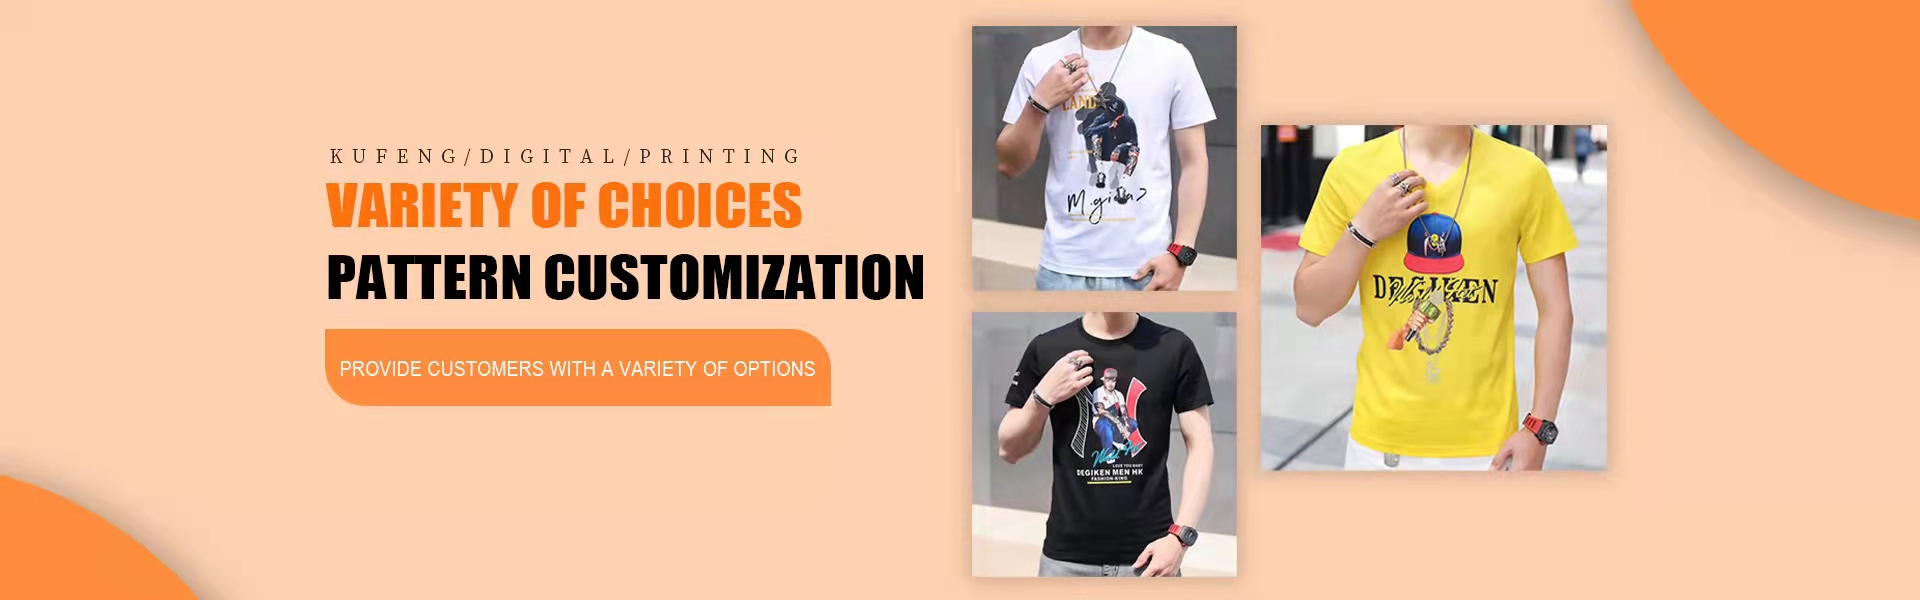 personalizacja osobowości, przetwarzanie przychodzących próbek, druk cyfrowy,Kufeng digital clothing